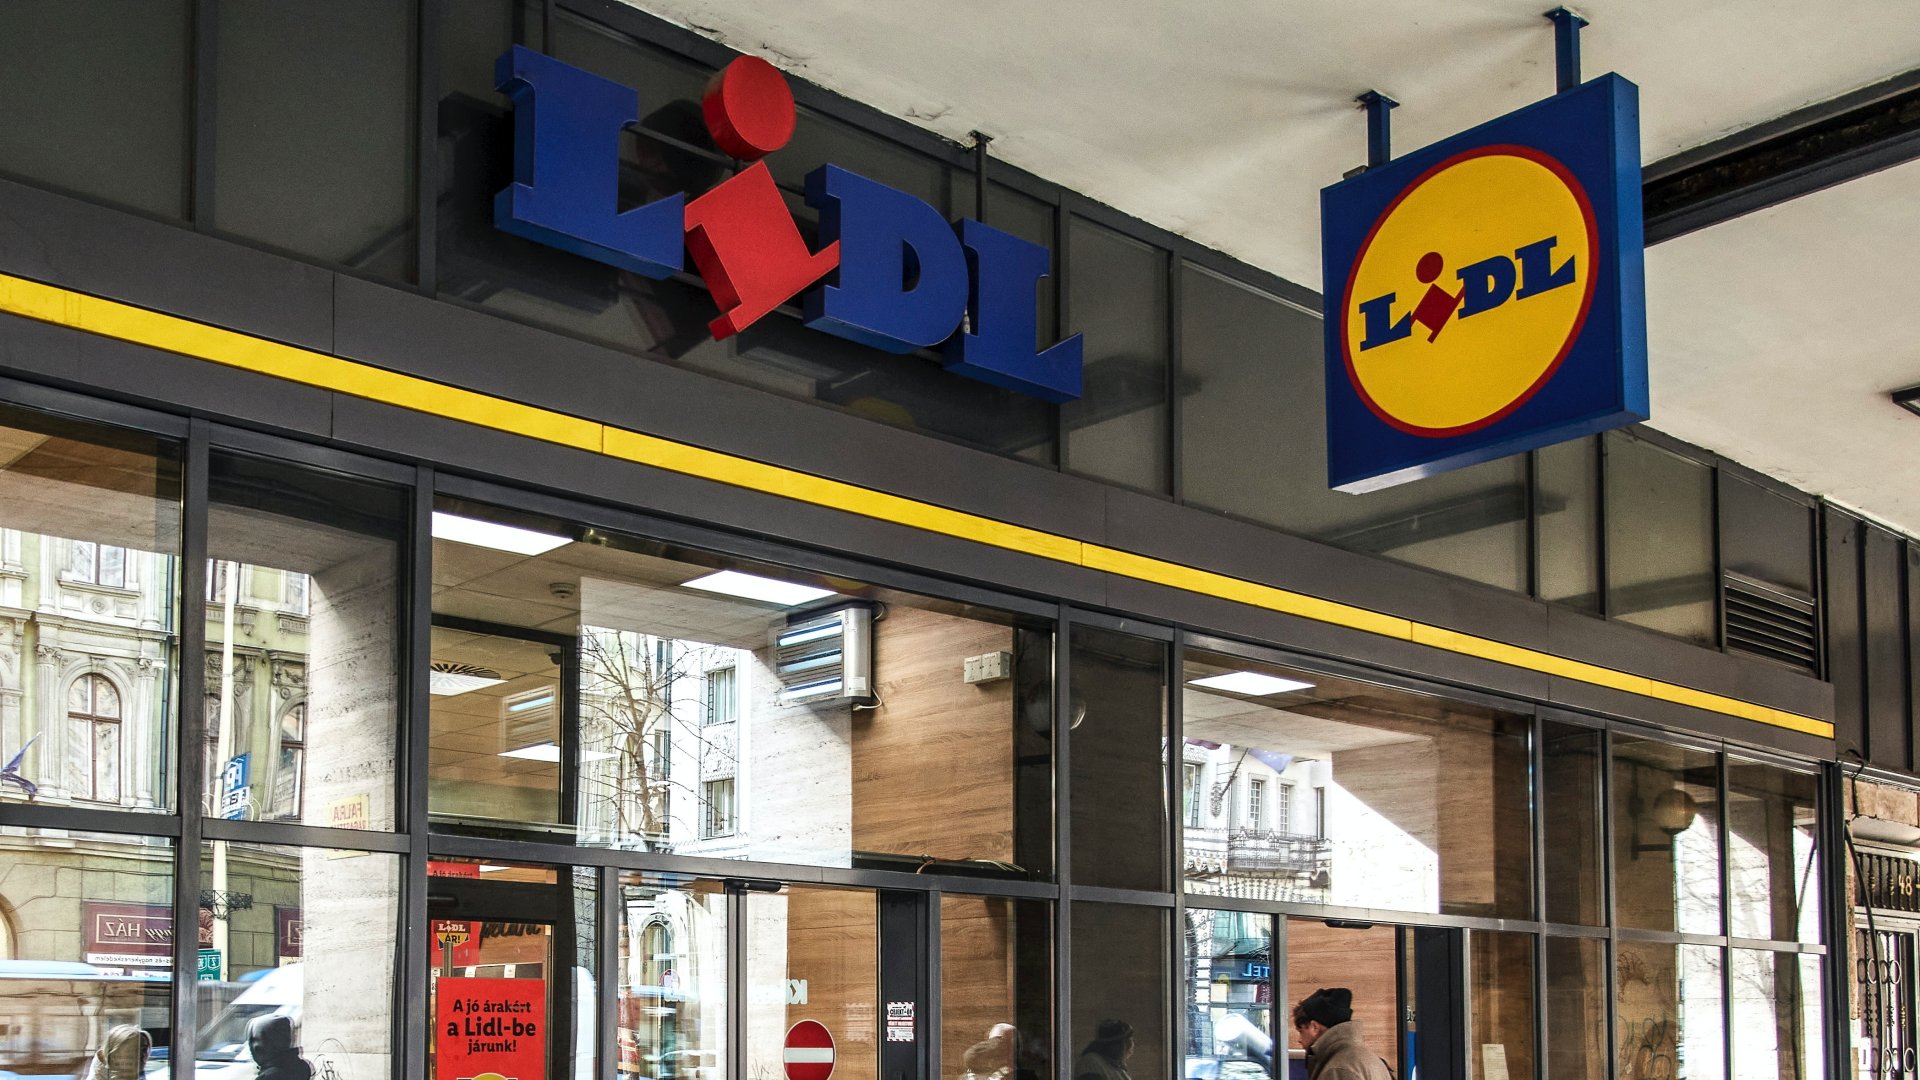 A LIDL kereskedelmi áruházlánc üzlete a Rákóczi út 48-50 szám alatti árkádsoron